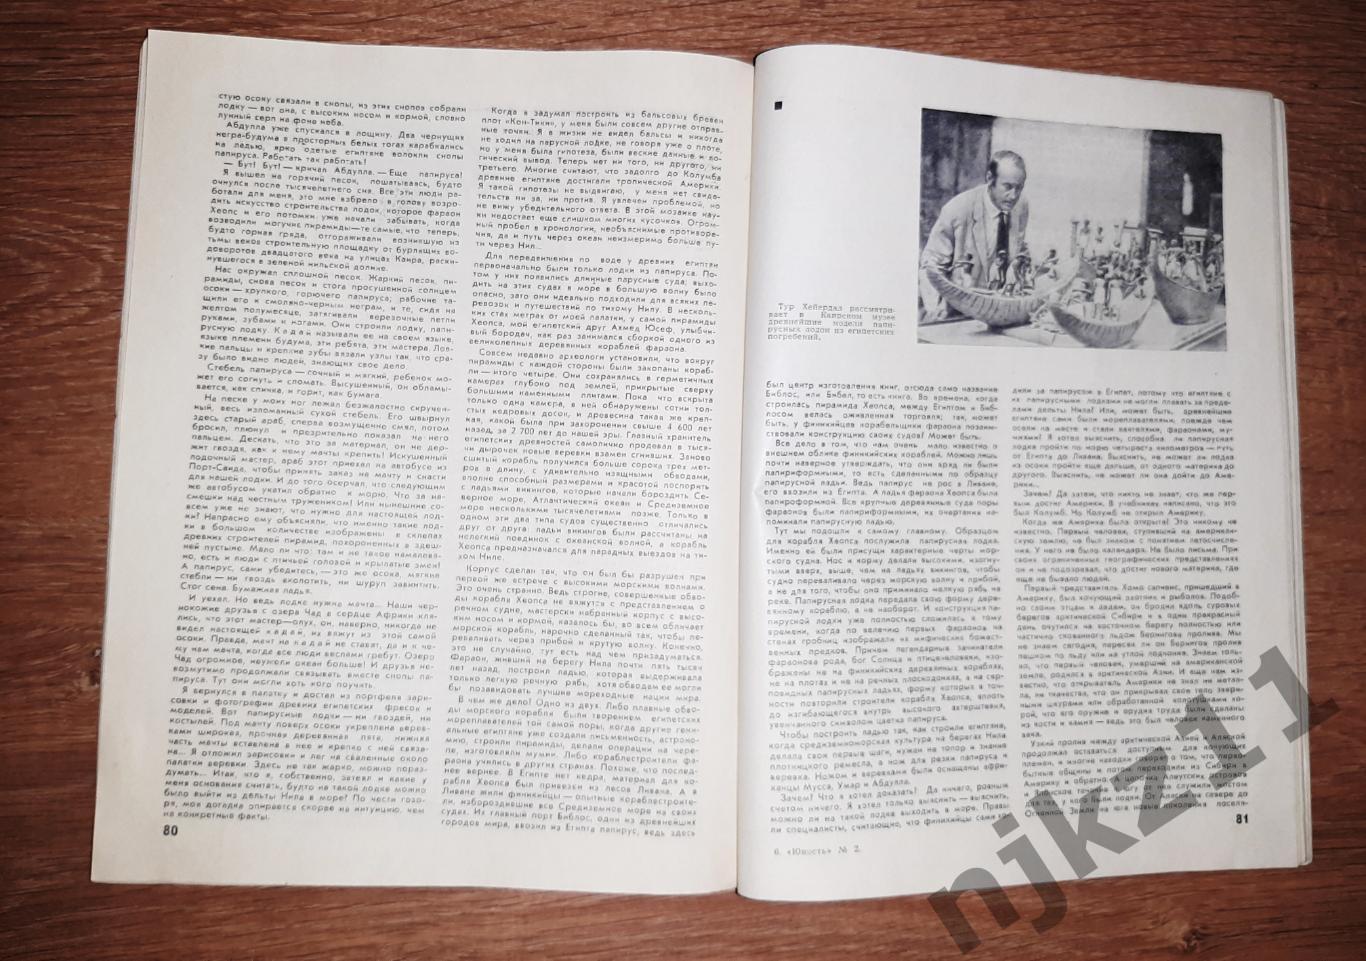 Журнал юность 1971 № 2 Пахомова и Горшков фигурное катание 4